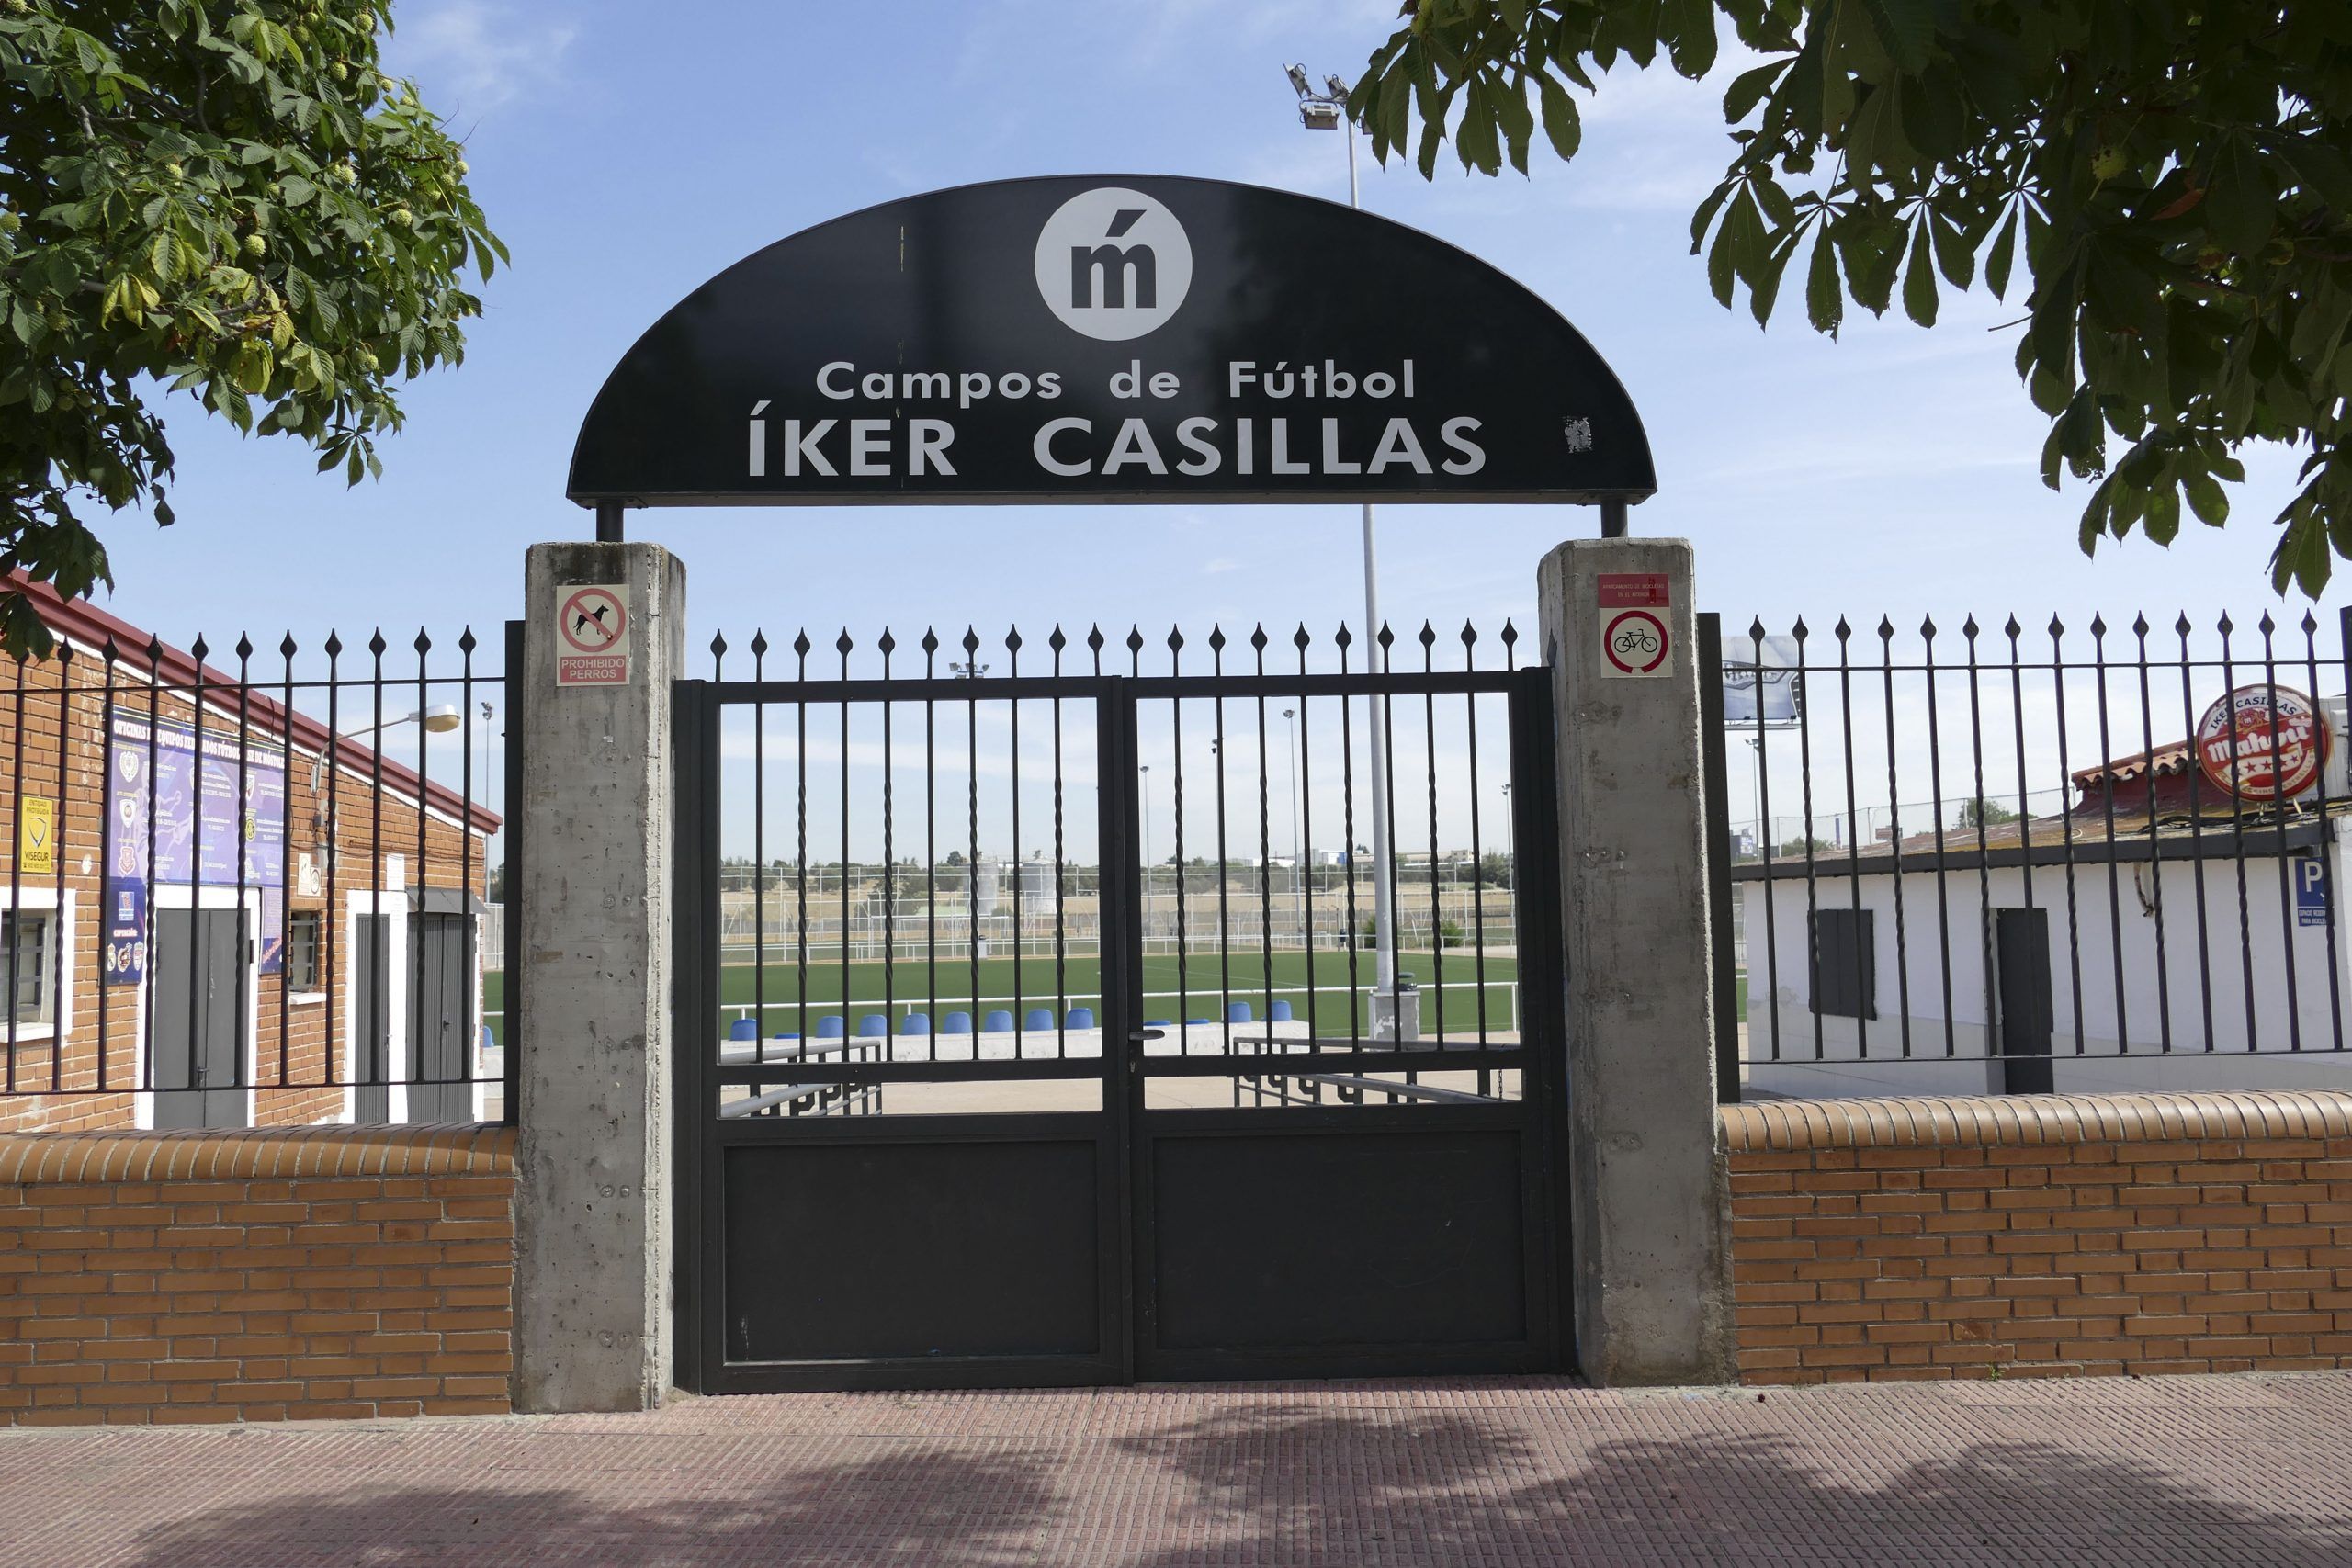 Los campos de fútbol Iker Casillas de Móstoles seguirán esperando